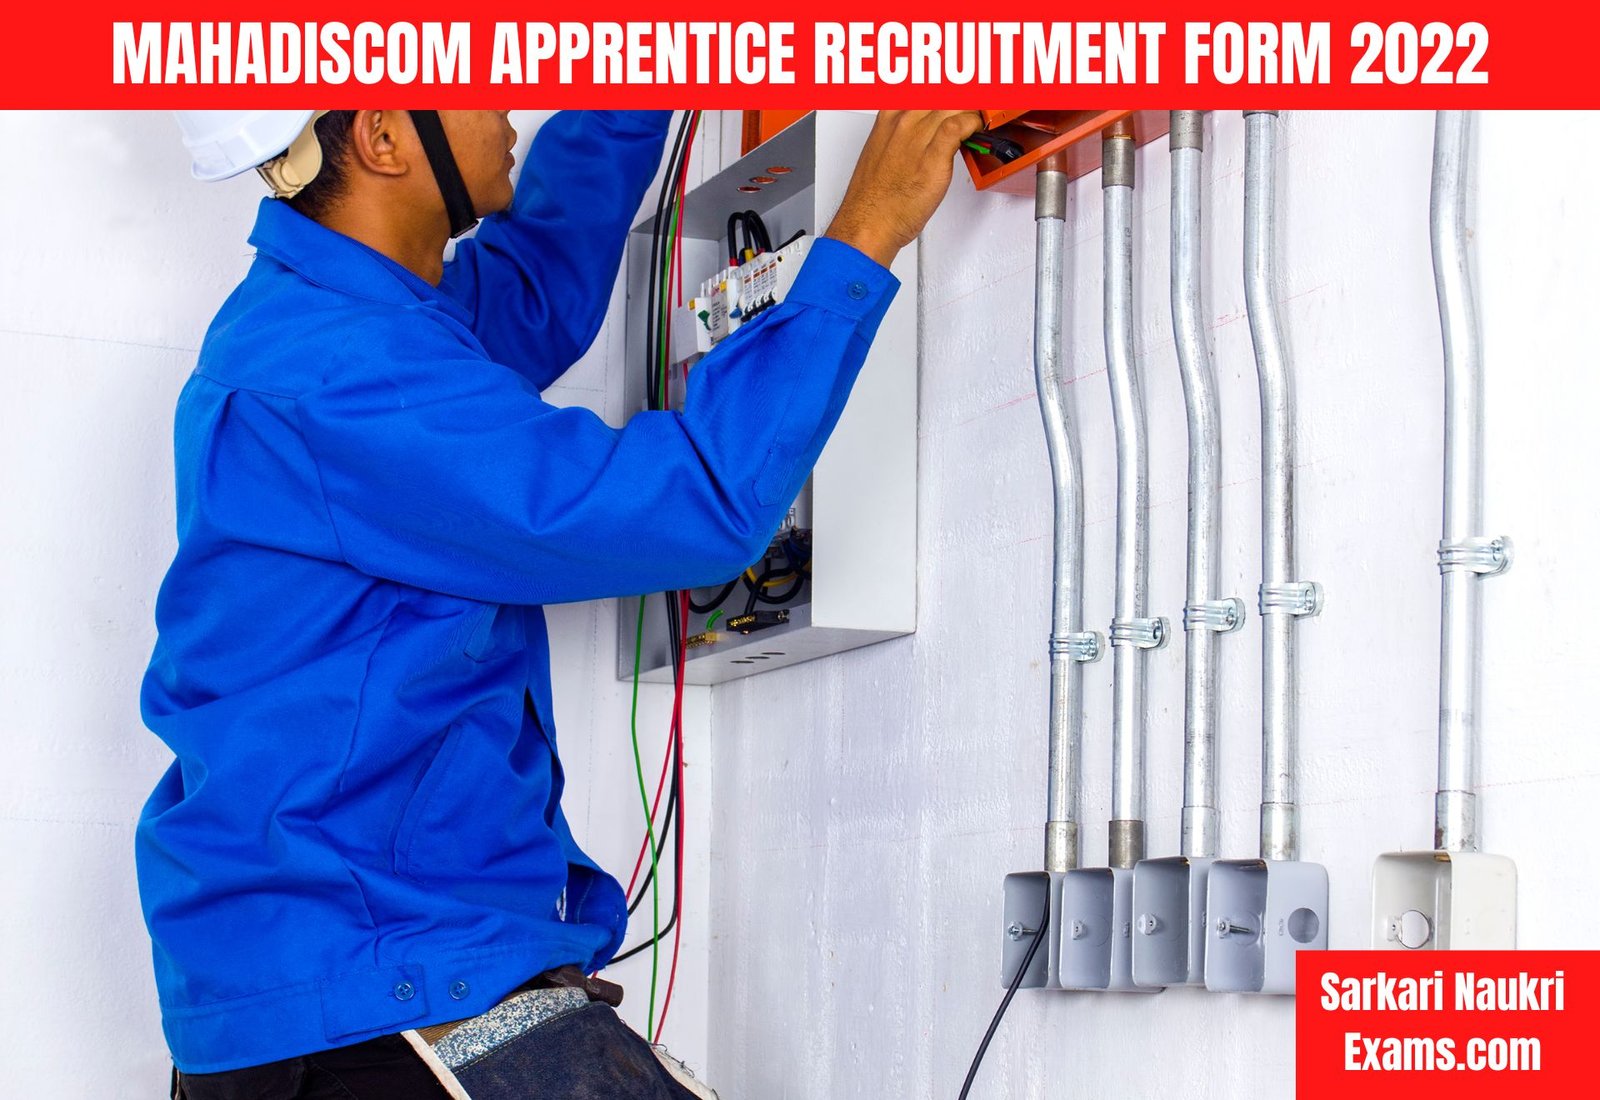 MAHADISCOM Apprentice Recruitment Form 2022 | Interview Based Job